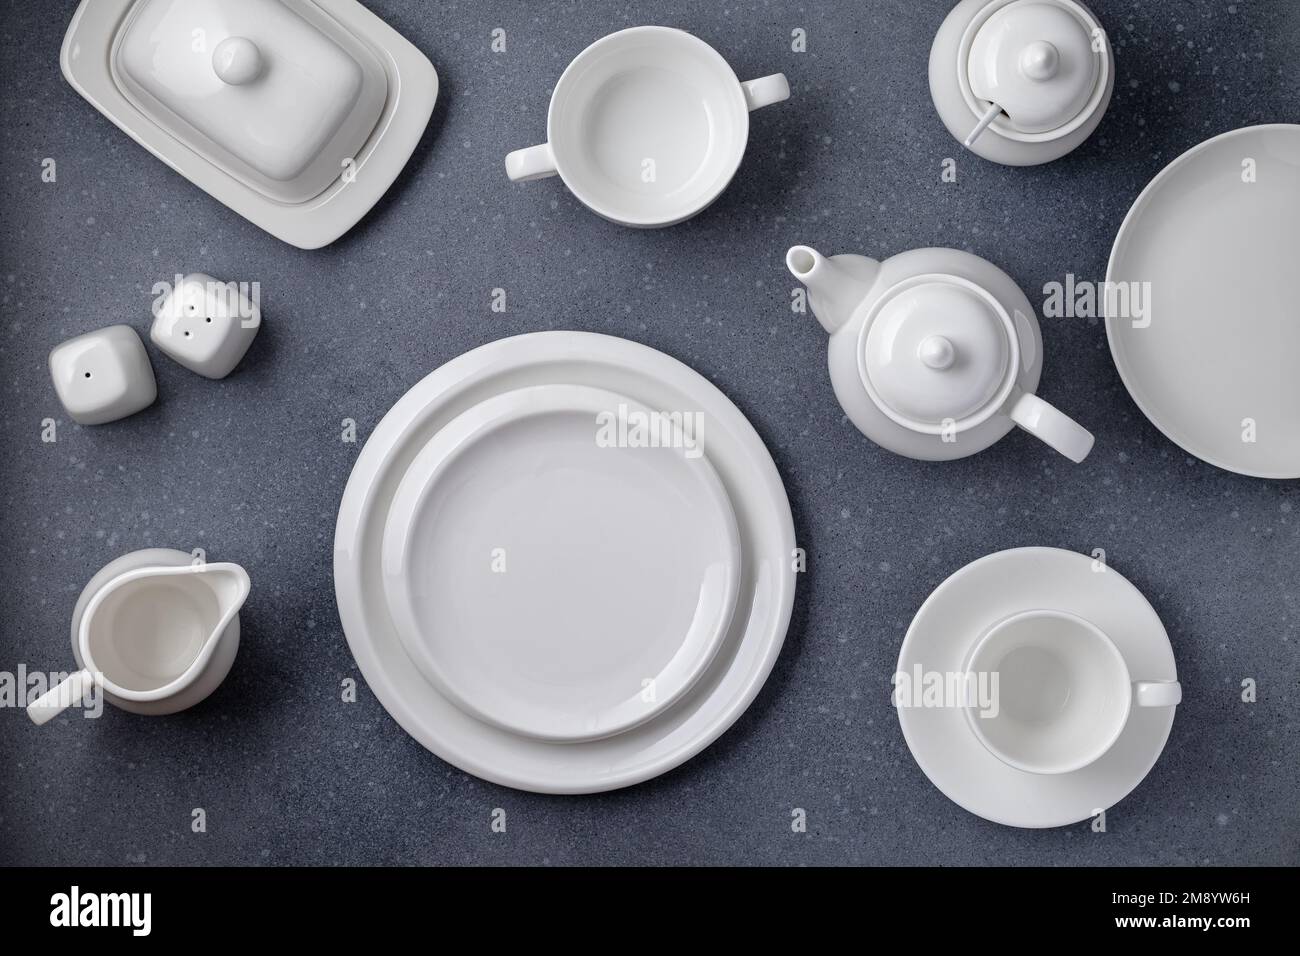 Weißes Geschirr zum Servieren und Essen. Leere saubere Teller, Tasse, Teekanne, Zuckerdose, Milchkanne und Butterschale auf einem grauen Betontisch, Draufsicht Stockfoto